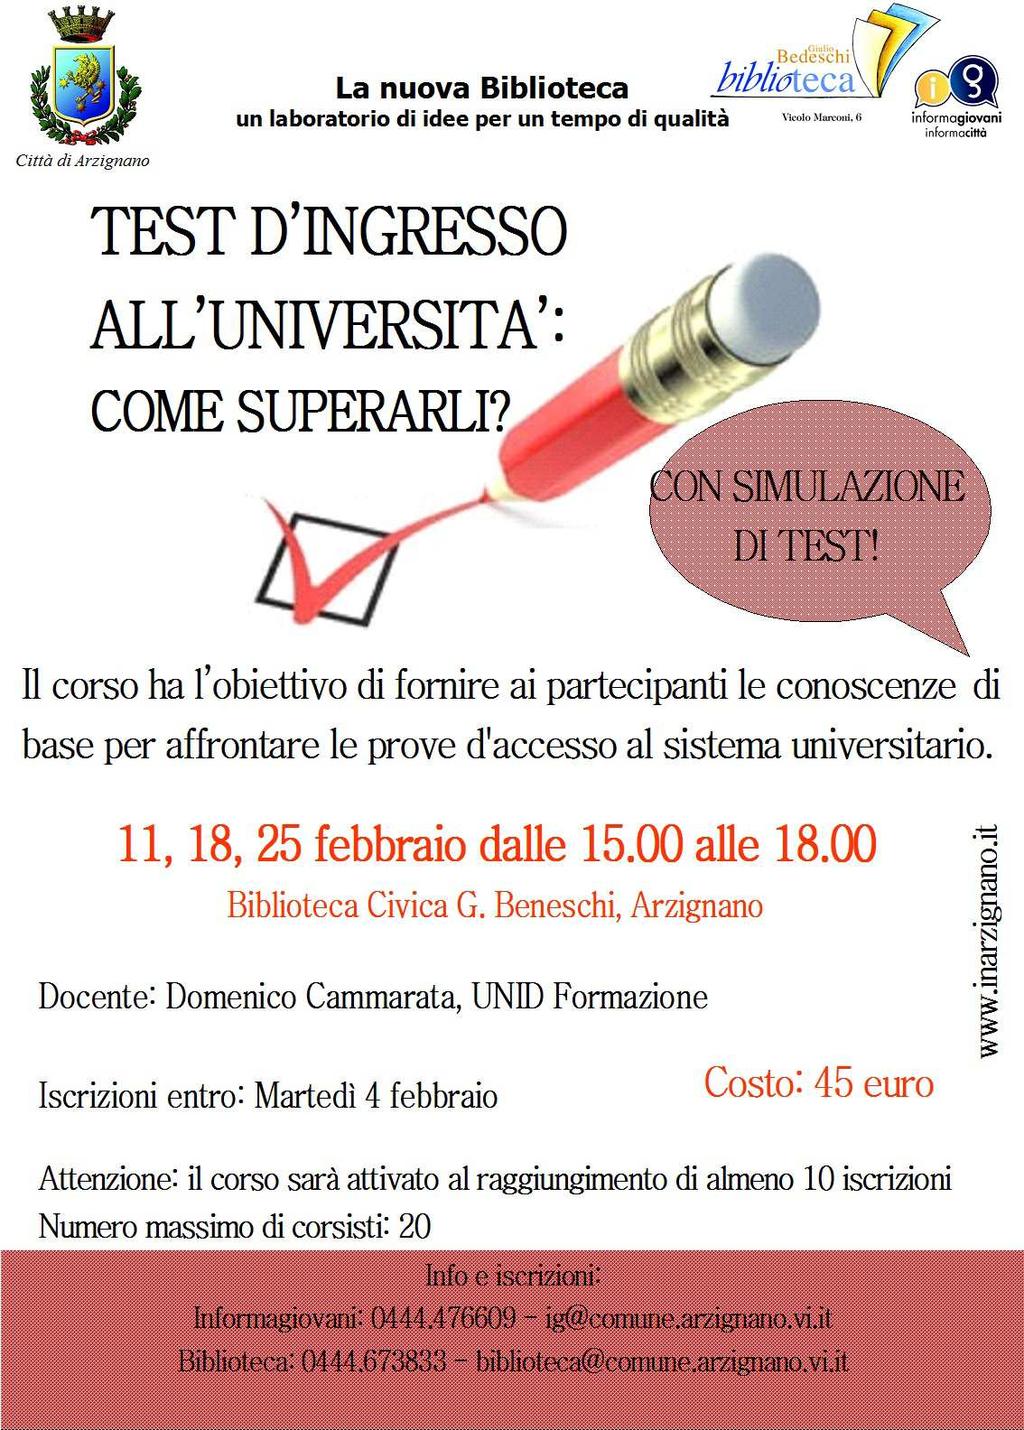 >>> TEST D INGRESSO ALL UNIVERSITA, COME SUPERARLI?: martedì 11, 18 e 25 febbraio, dalle ore 15.00 